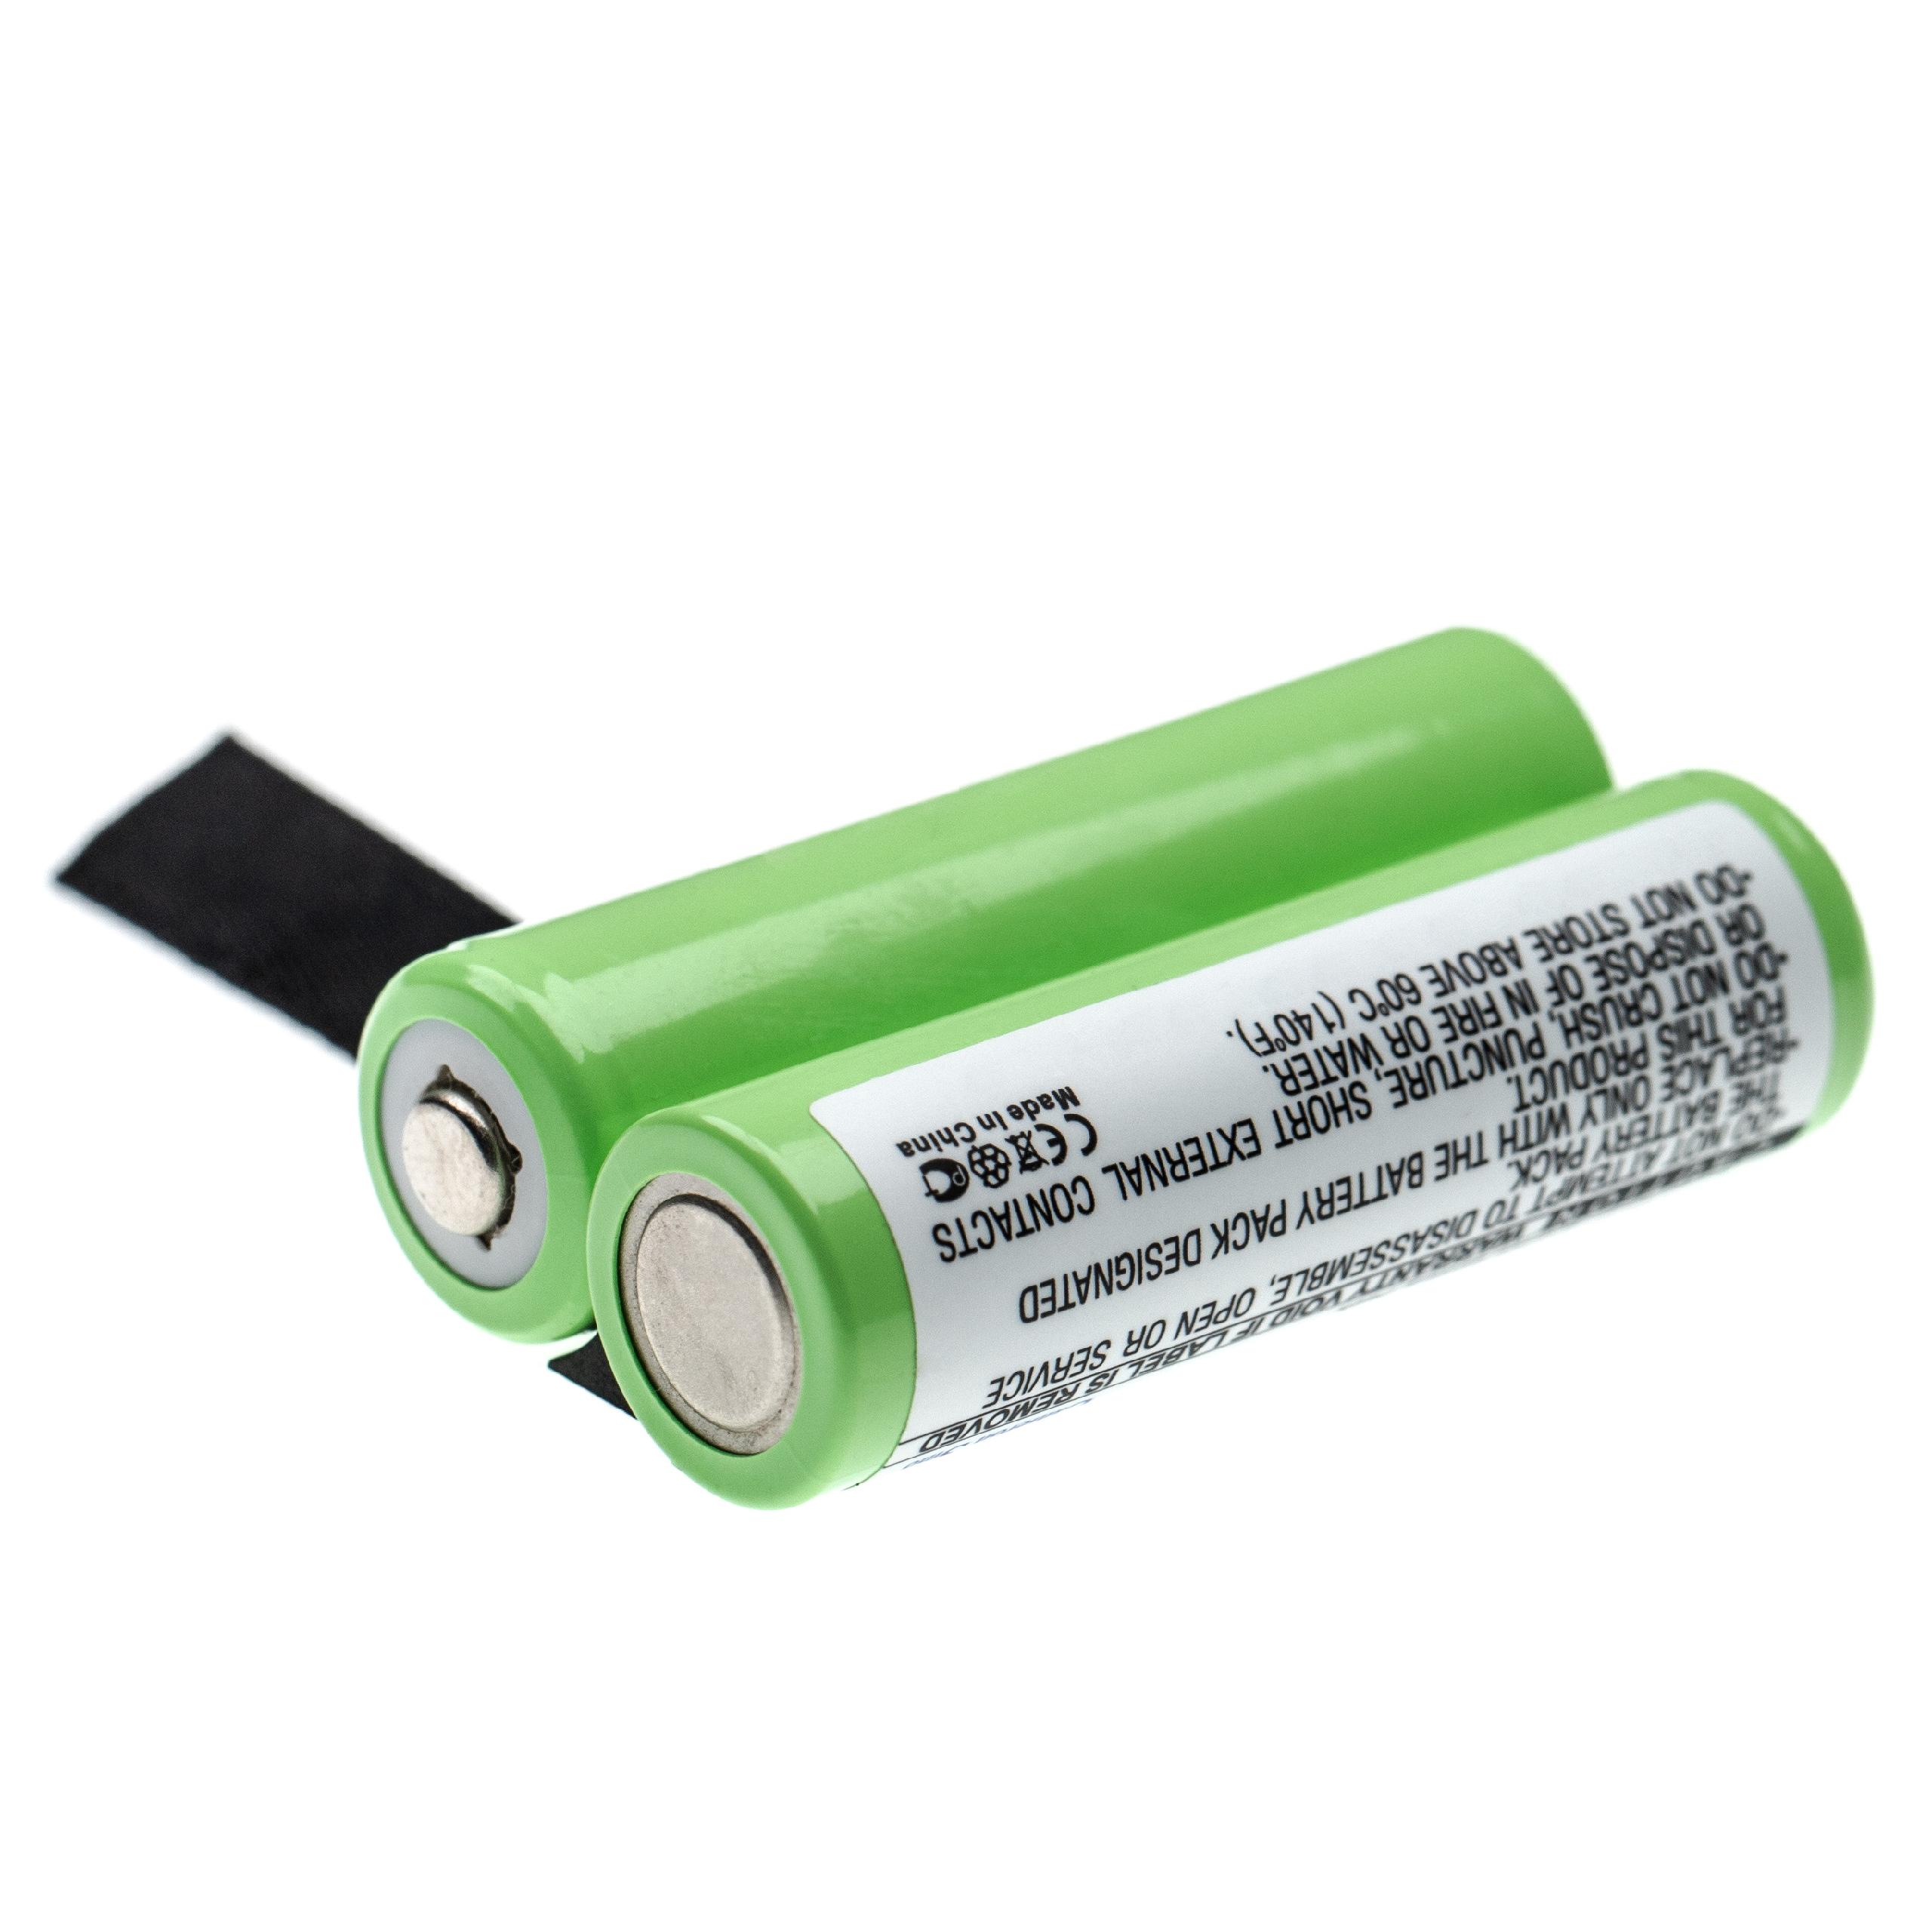 Batería reemplaza Demag 773-499-44 para mando distancia industrial Demag - 2000 mAh 2,4 V NiMH